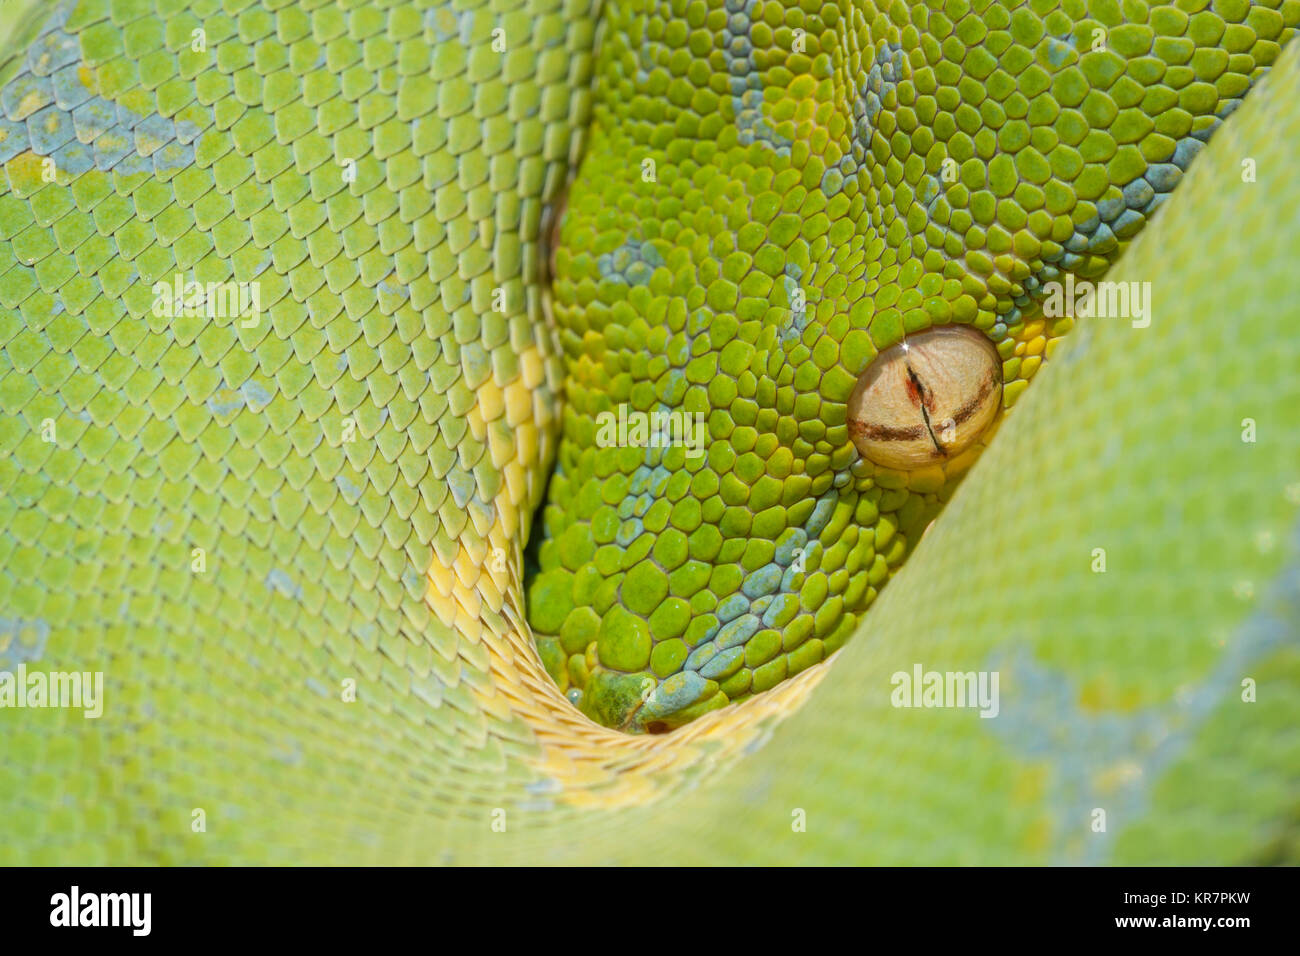 Green Tree Python (Morelia viridis) pendaison sur la branche en attente d'une proie. Semble être une pointe de la protection de ses bobines. Banque D'Images